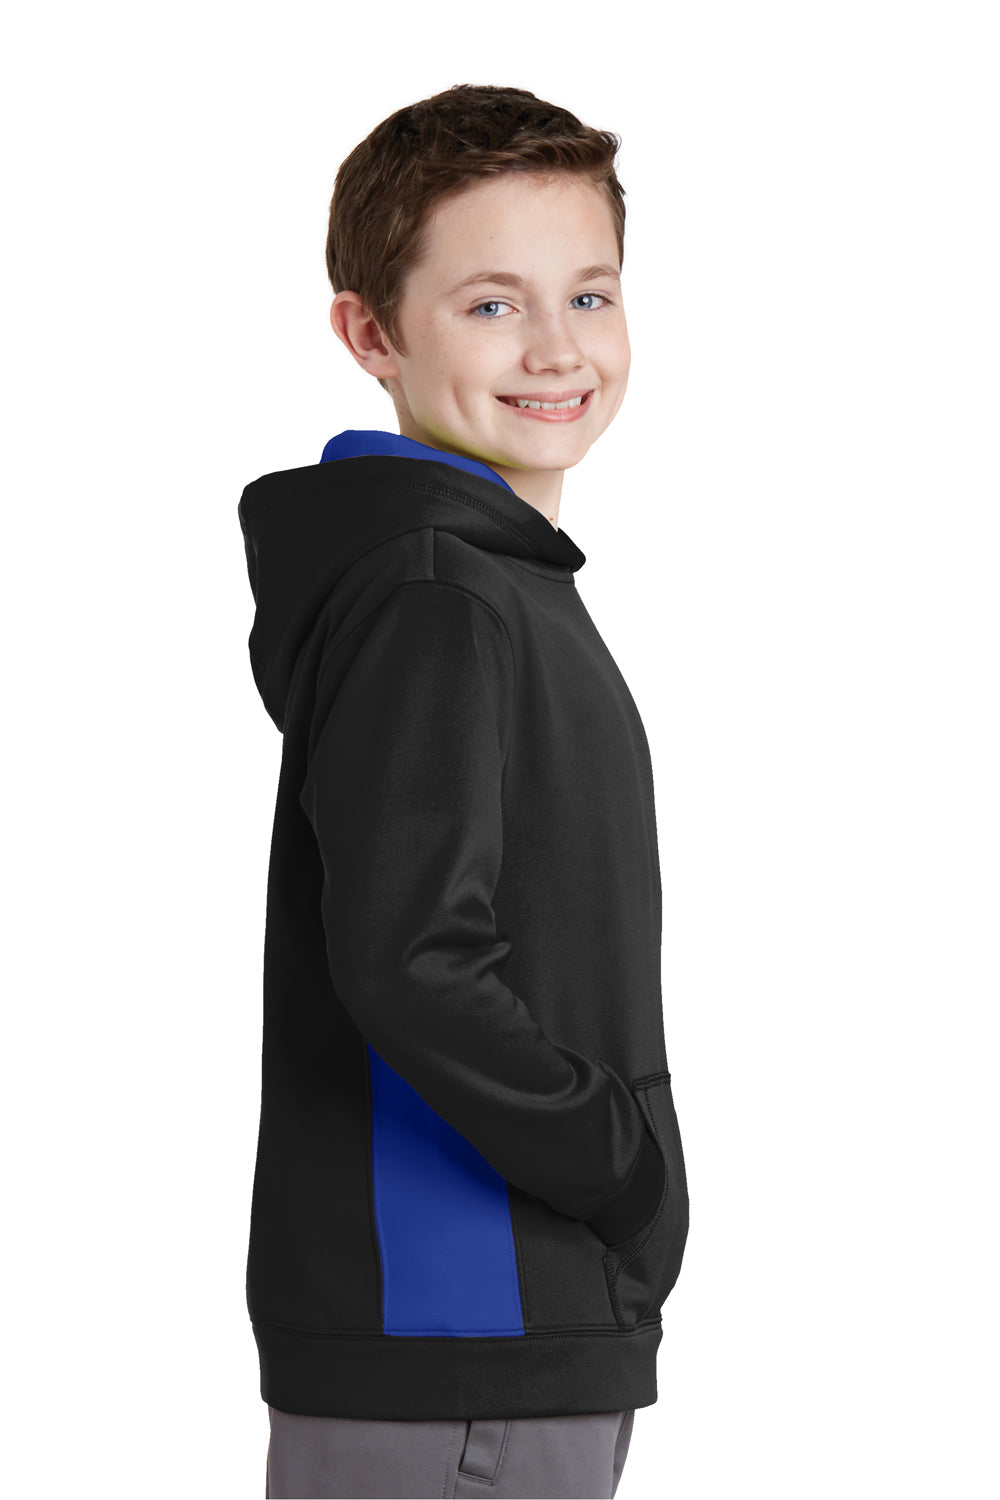 Sport-Tek YST235 Youth Sport-Wick Moisture Wicking Fleece Hooded Sweatshirt Hoodie Black/Royal Blue Side